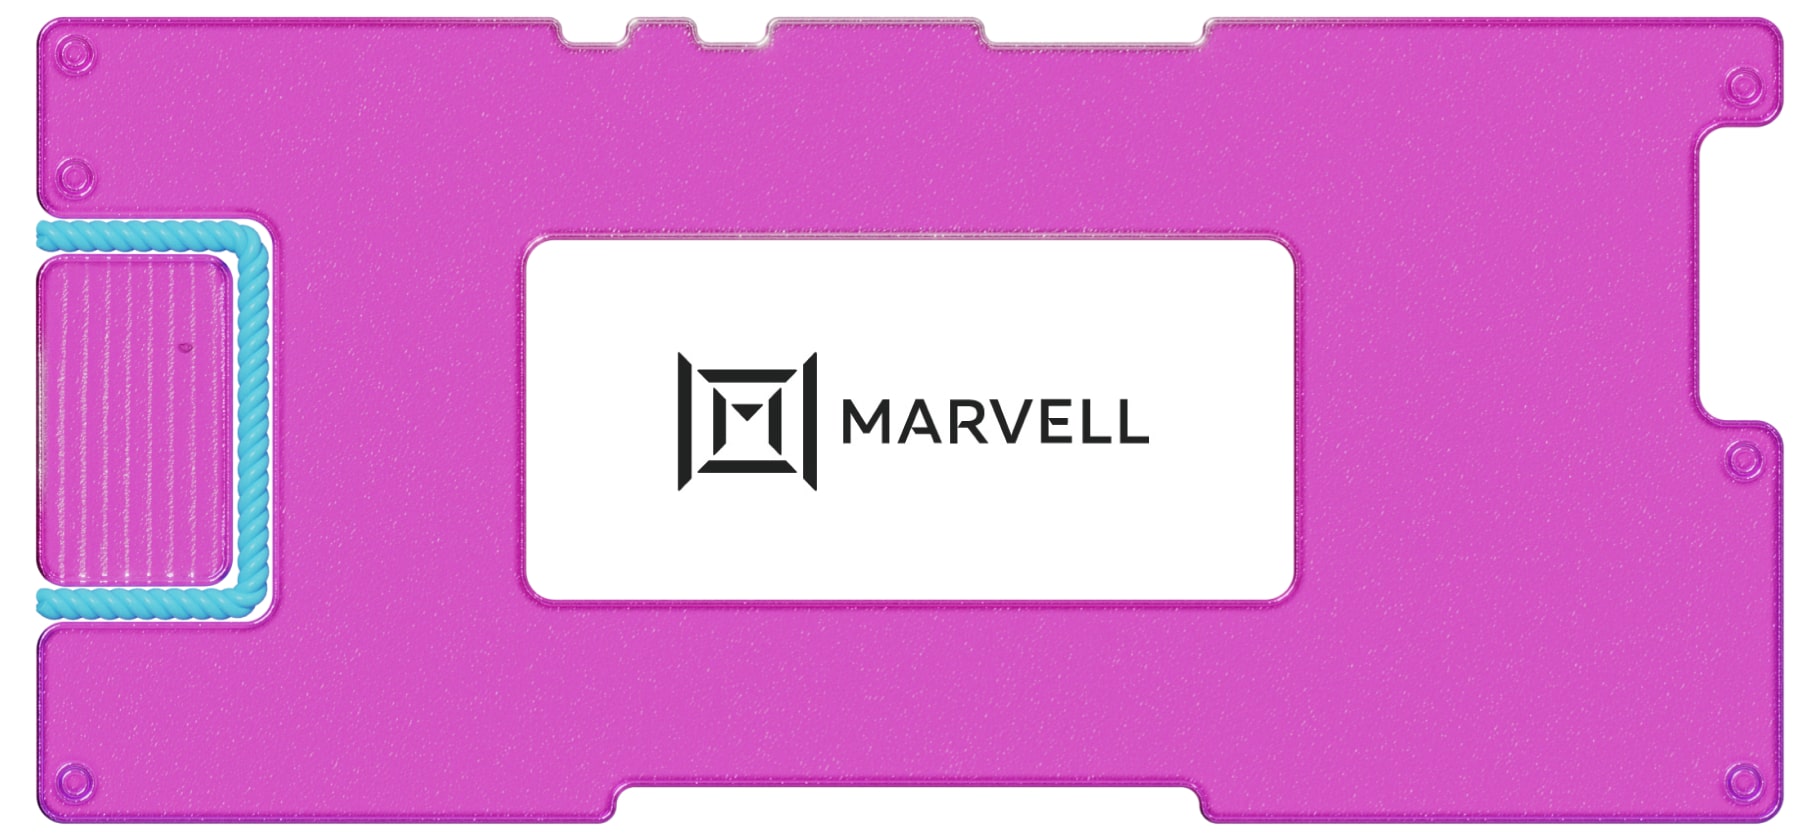 Обзор Marvell: инвестируем в дата-центры и терпим убытки